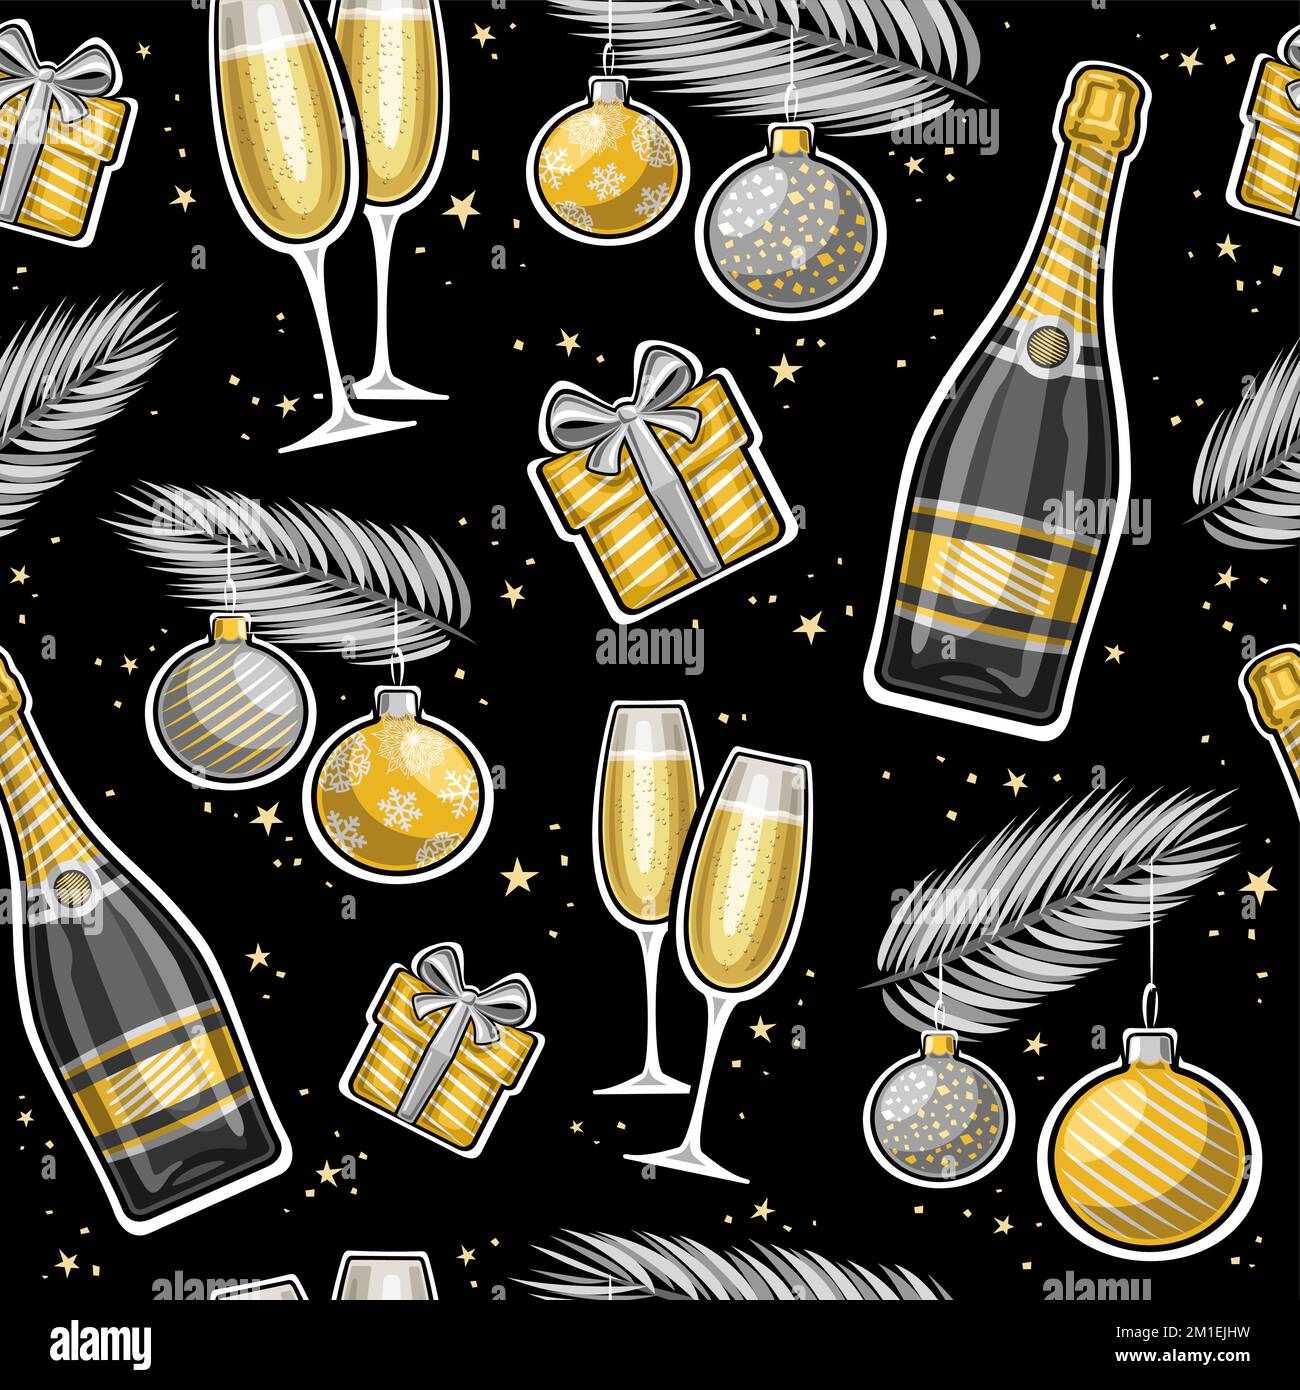 Vektor Neujahr nahtloses Muster, wiederhole den Hintergrund mit einer Illustration silberner hängender Kugeln auf Tannenzweigen, zwei Weingläser, Cartoon-Geschenkboxen, d Stock Vektor